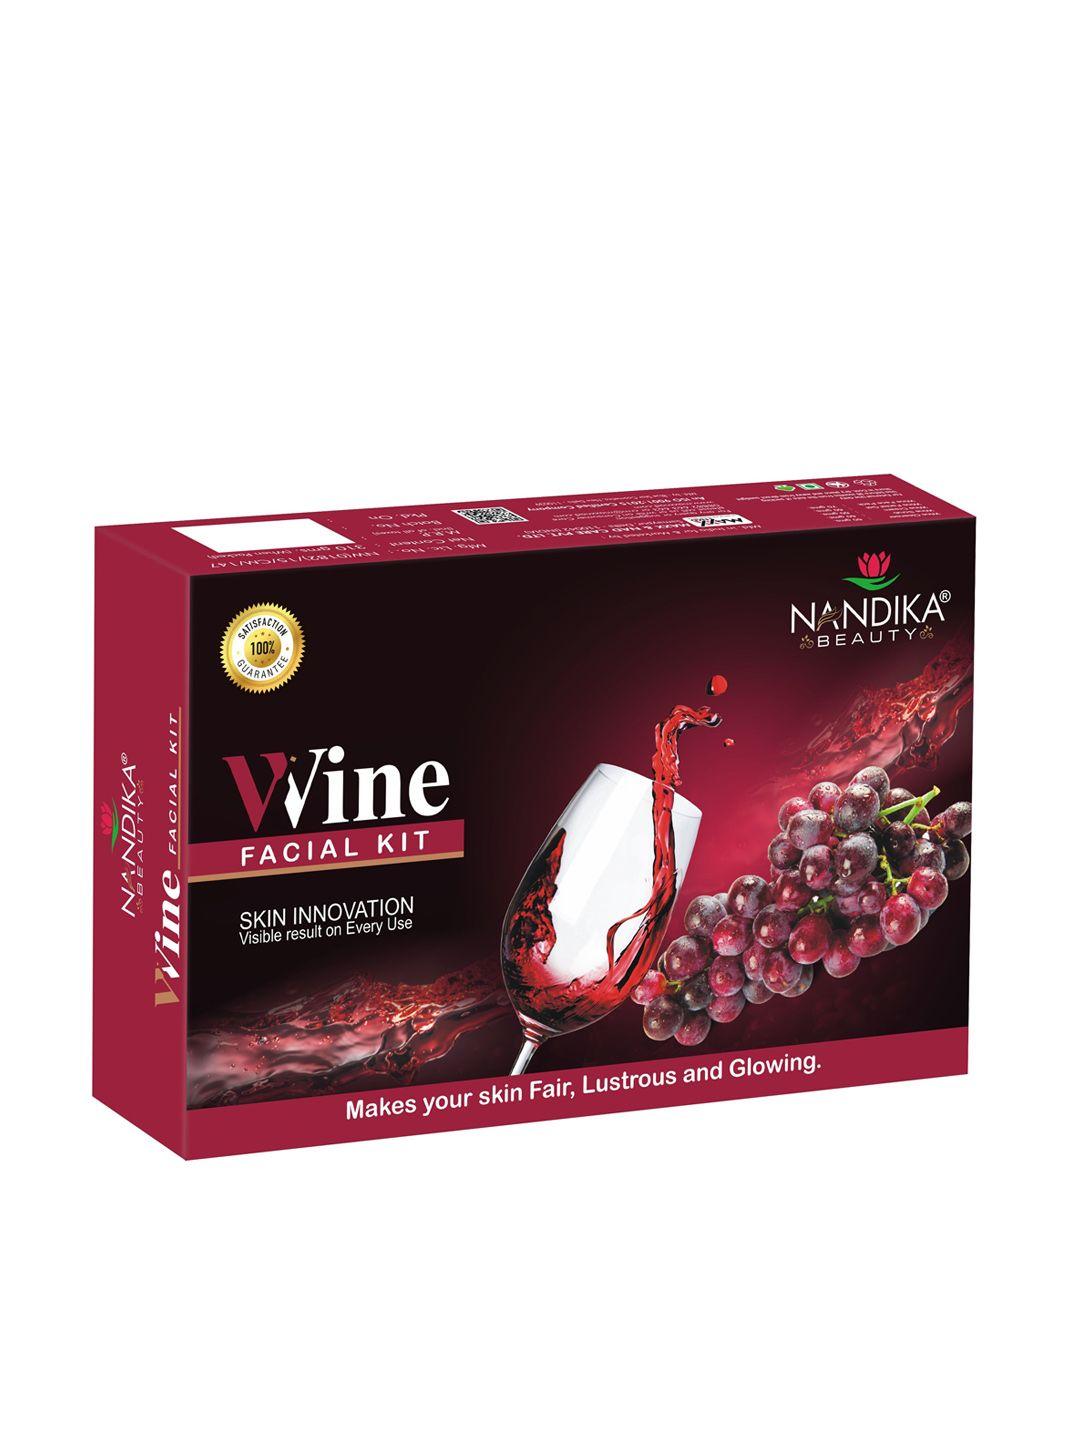 nandika beauty unisex wine facial kit for lustrous & glowing skin - 310g